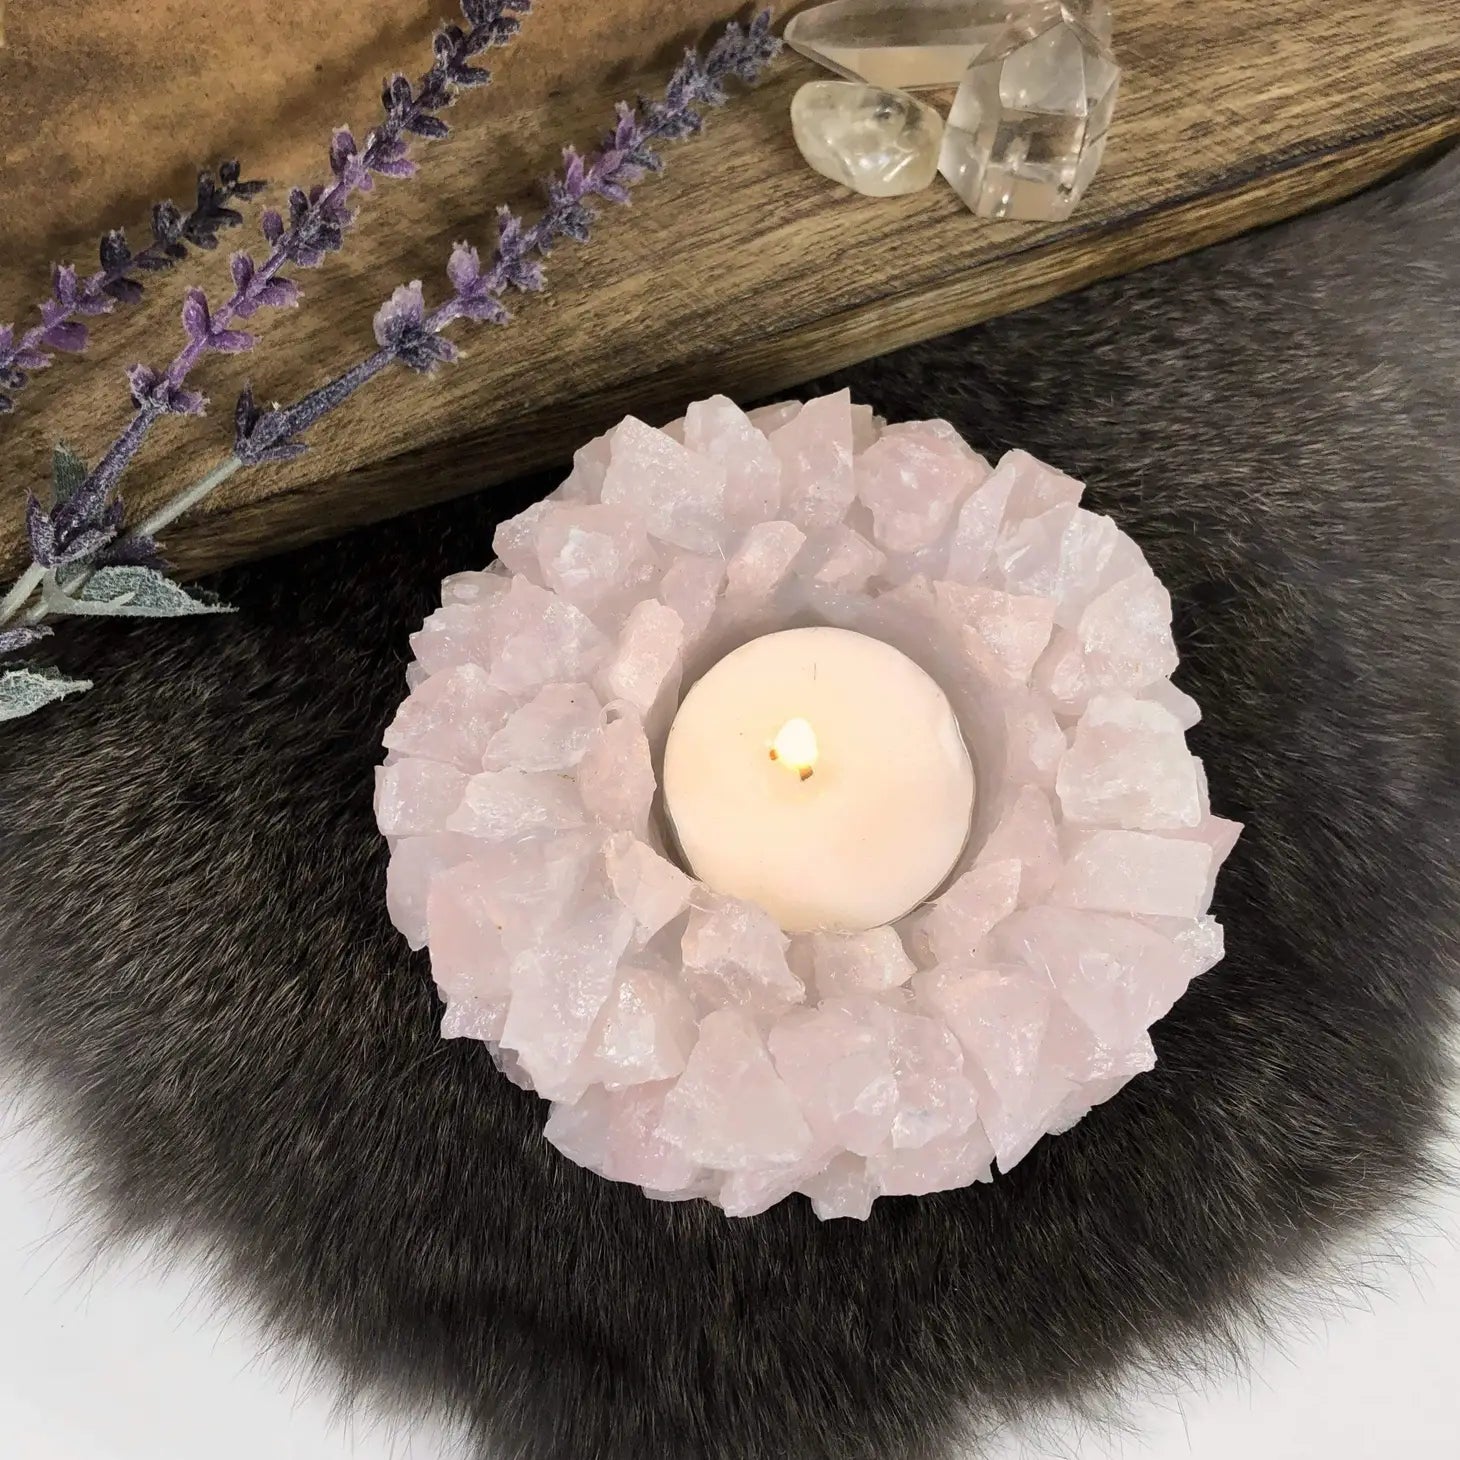 Rose Quartz Candle Holder - Mindful Living Home